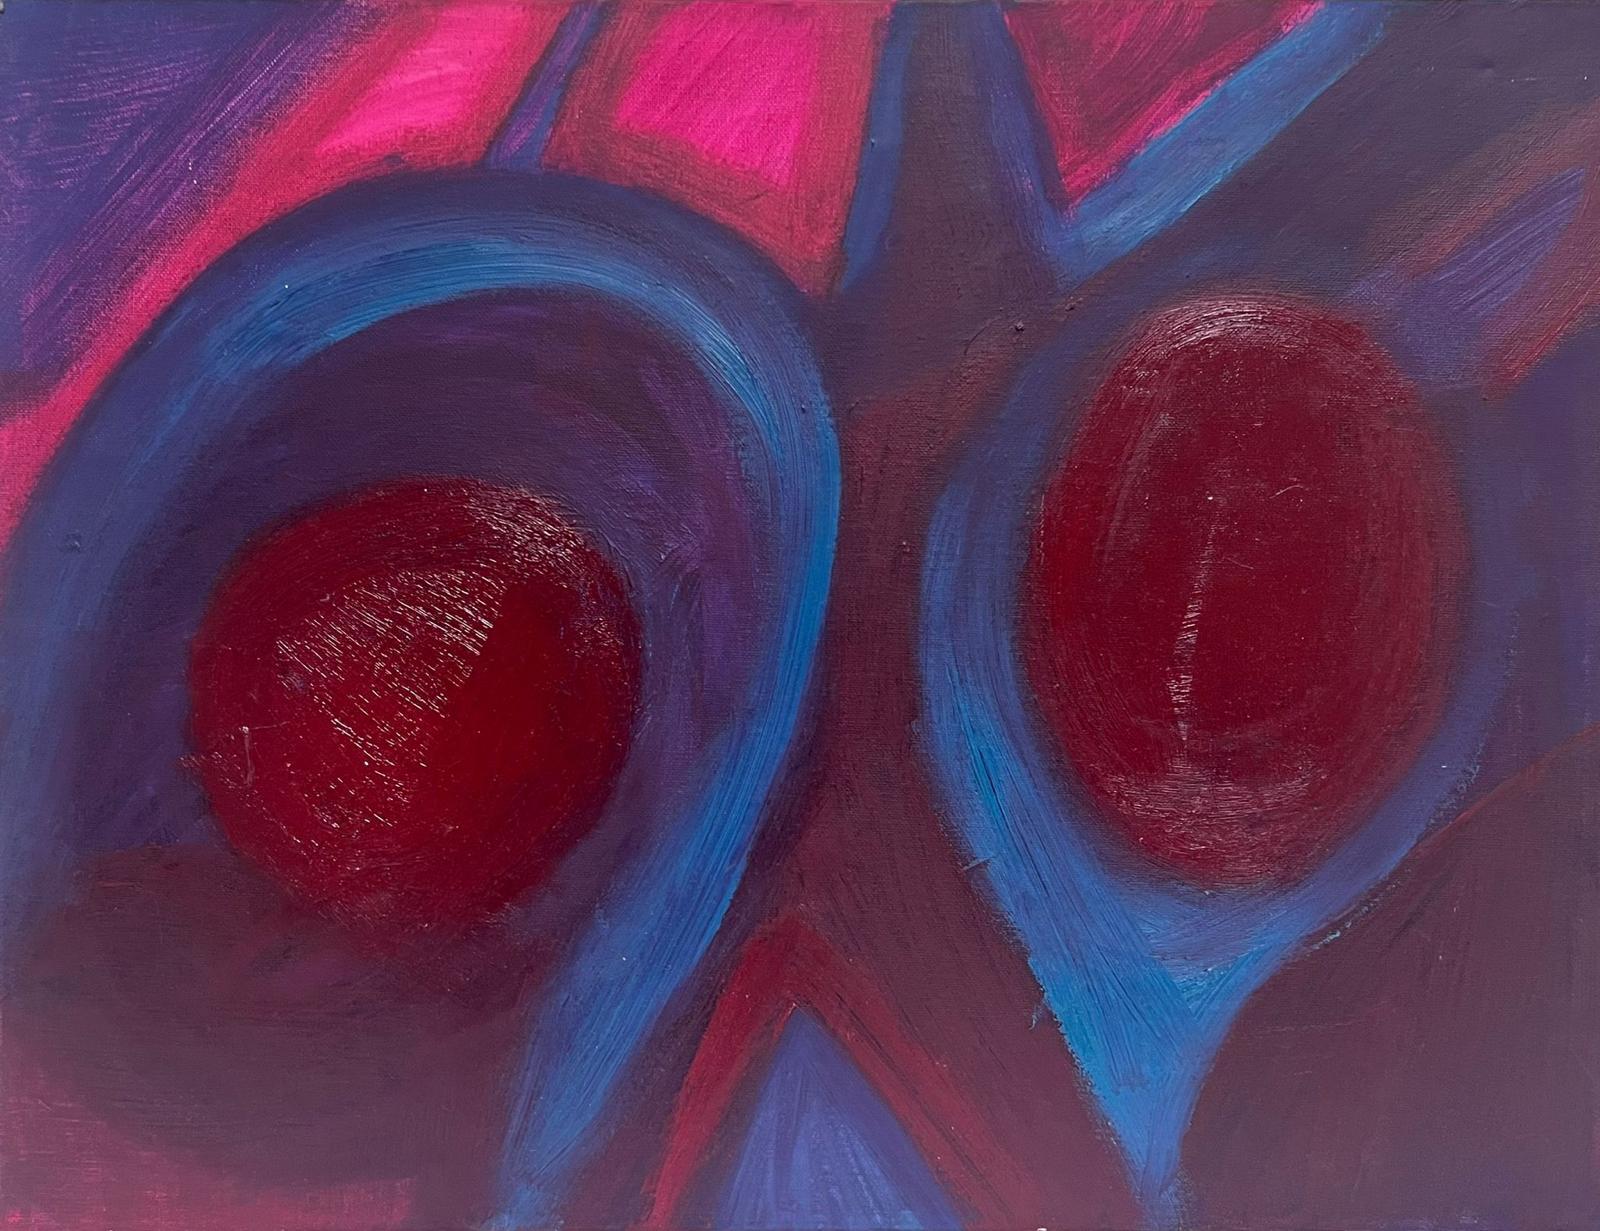 Abstract Painting Sally Bradshaw - Peinture à l'huile britannique contemporaine expressionniste abstraite